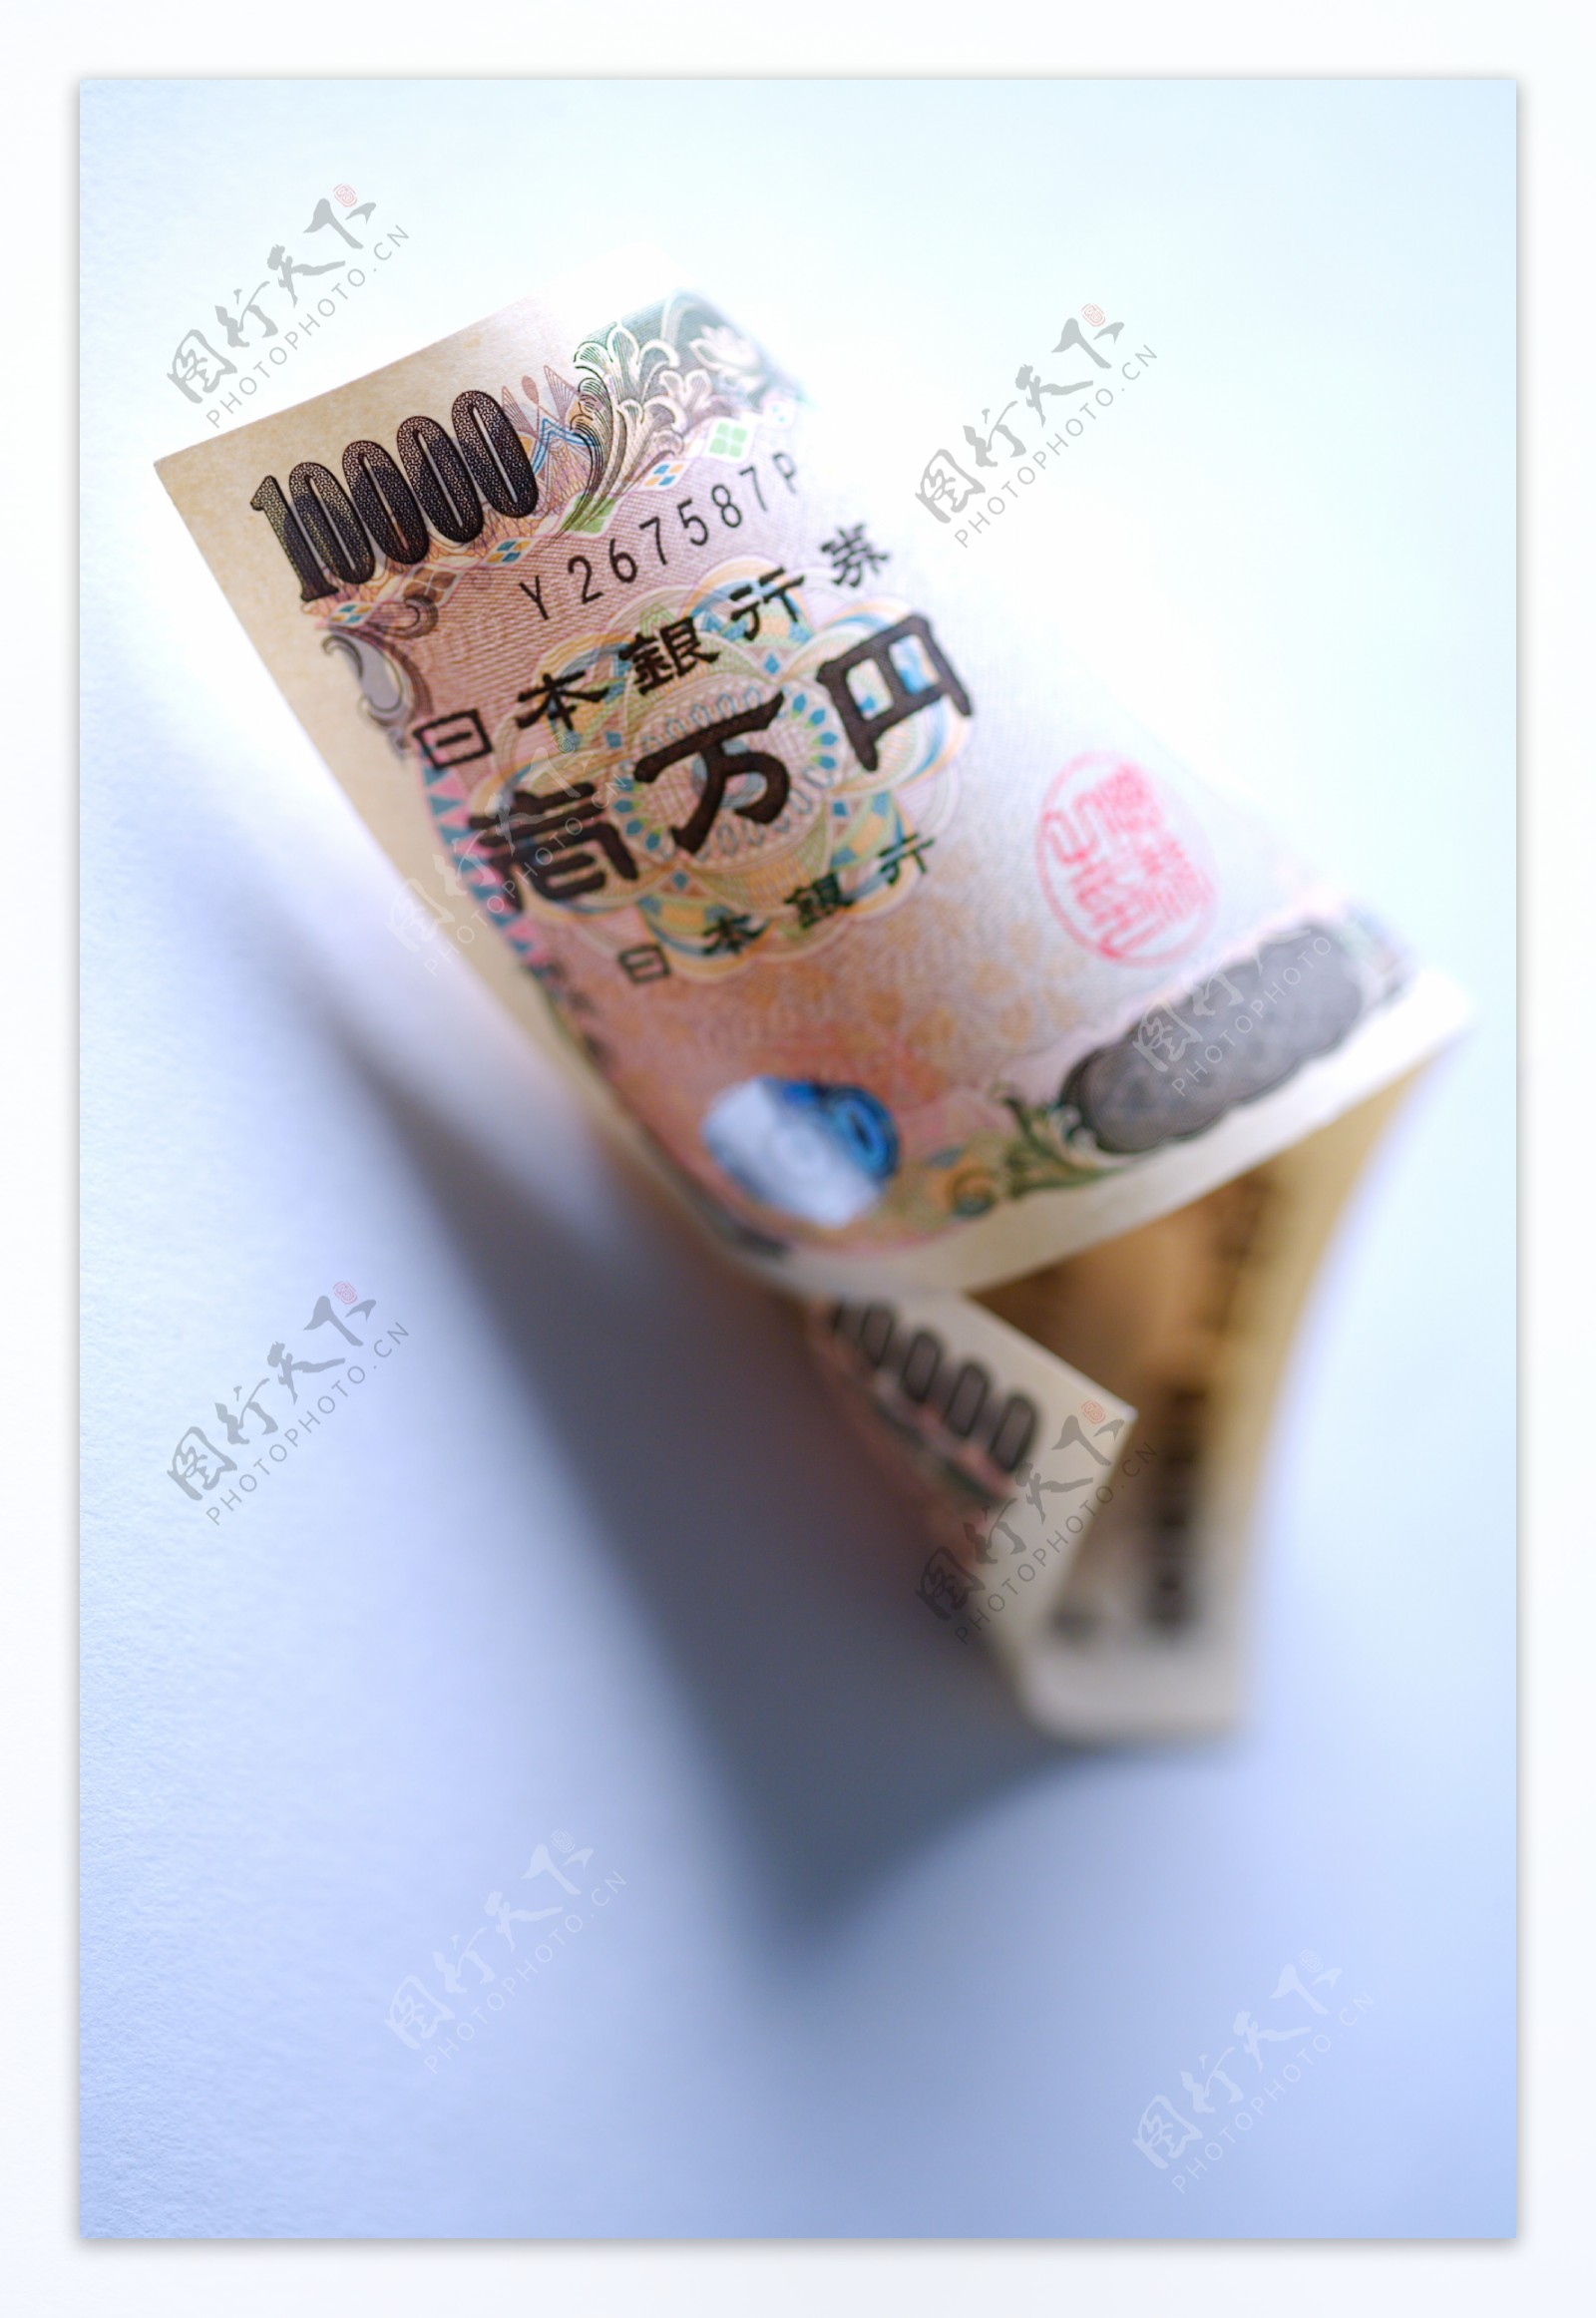 一张卷起的日本银行券特写图片